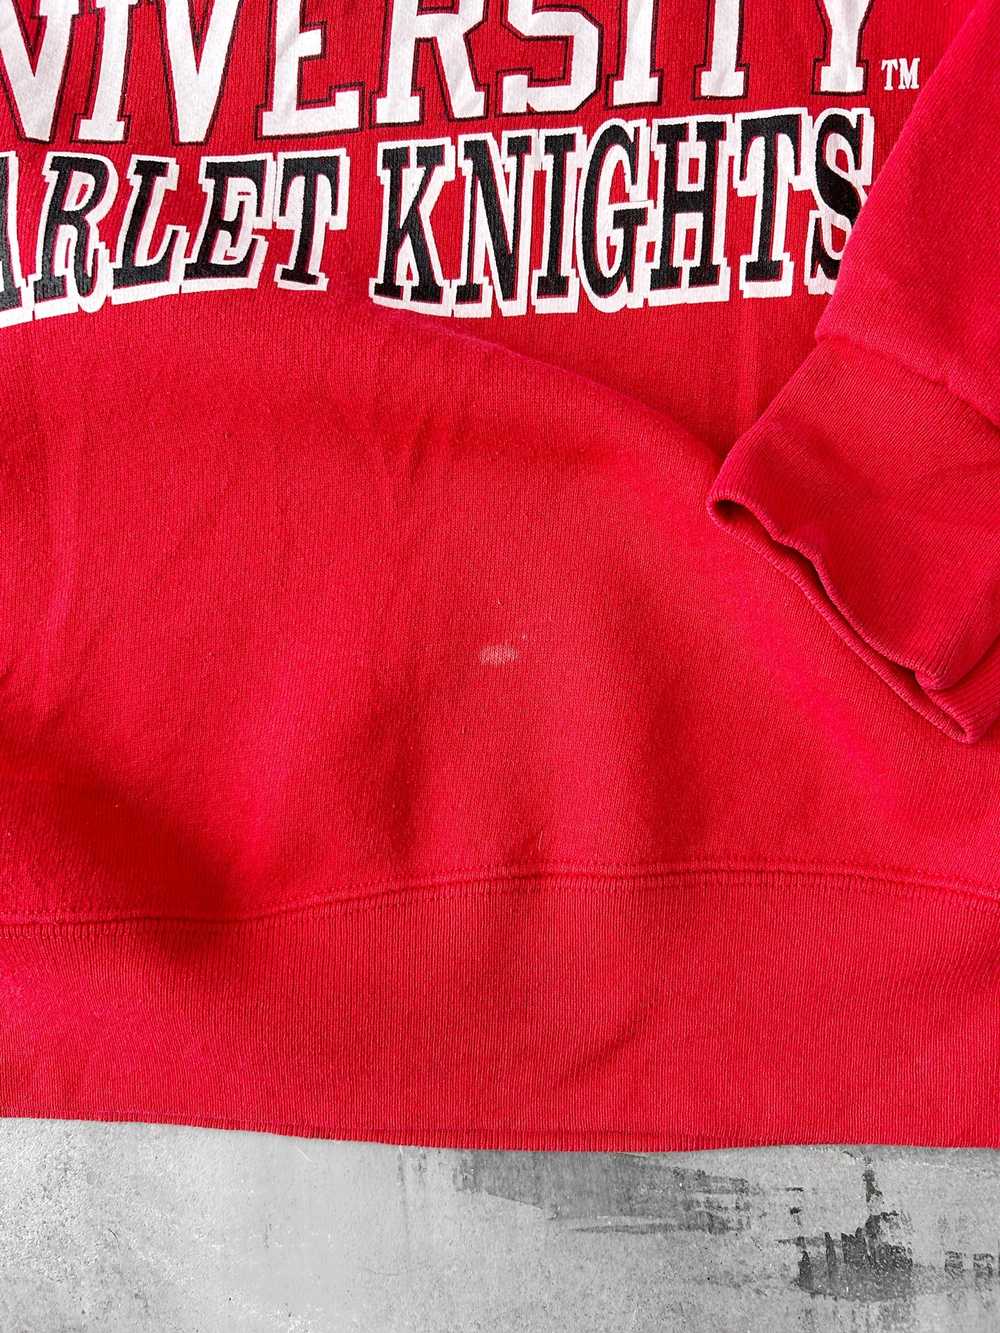 Rutgers University Sweatshirt 90's - Large - image 3